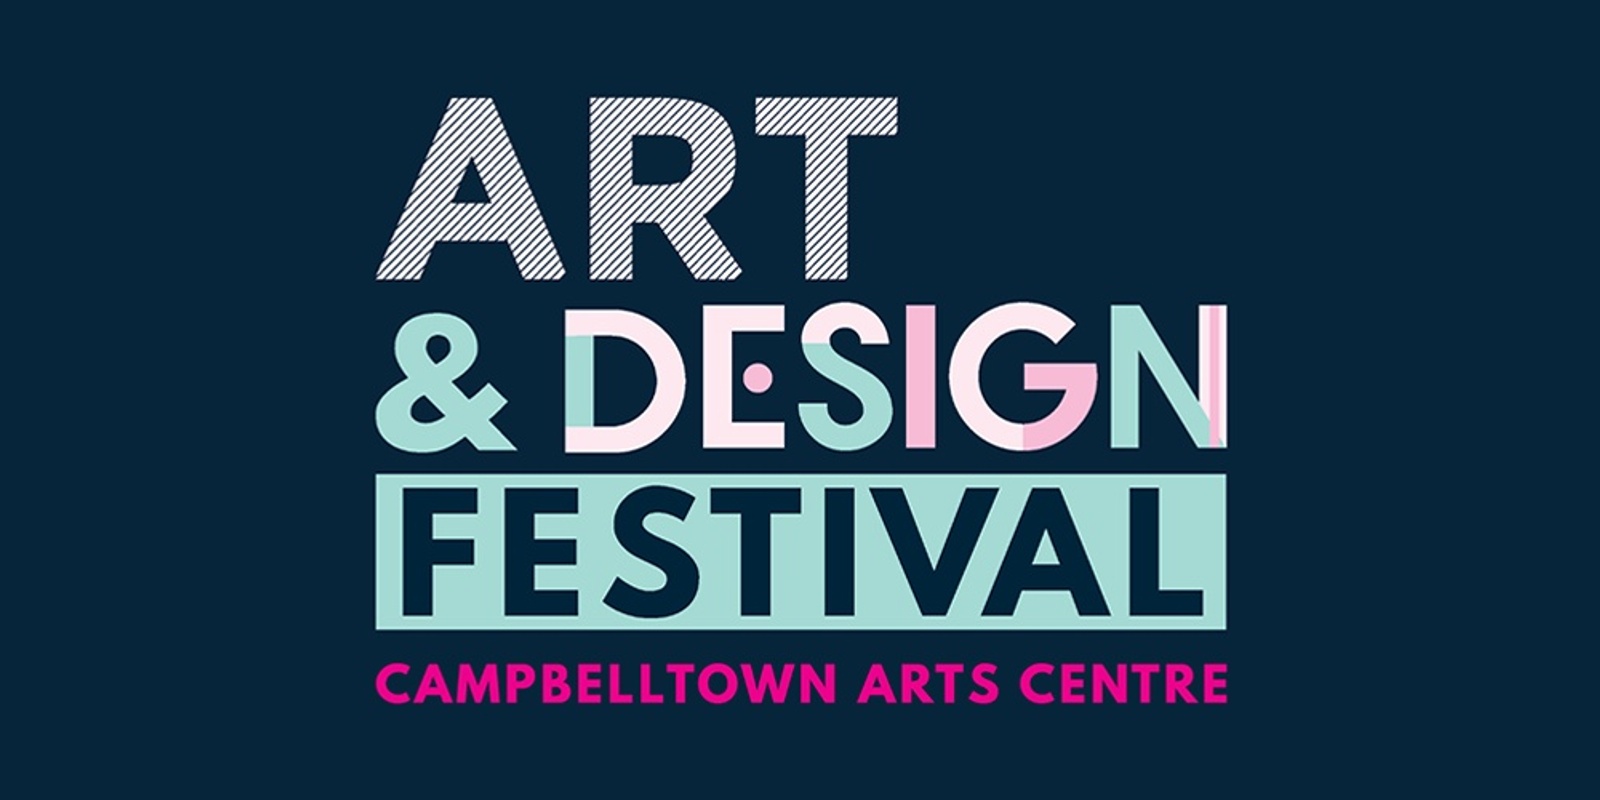 Banner image for Art & Design Festival at Campbelltown Arts Centre - workshops